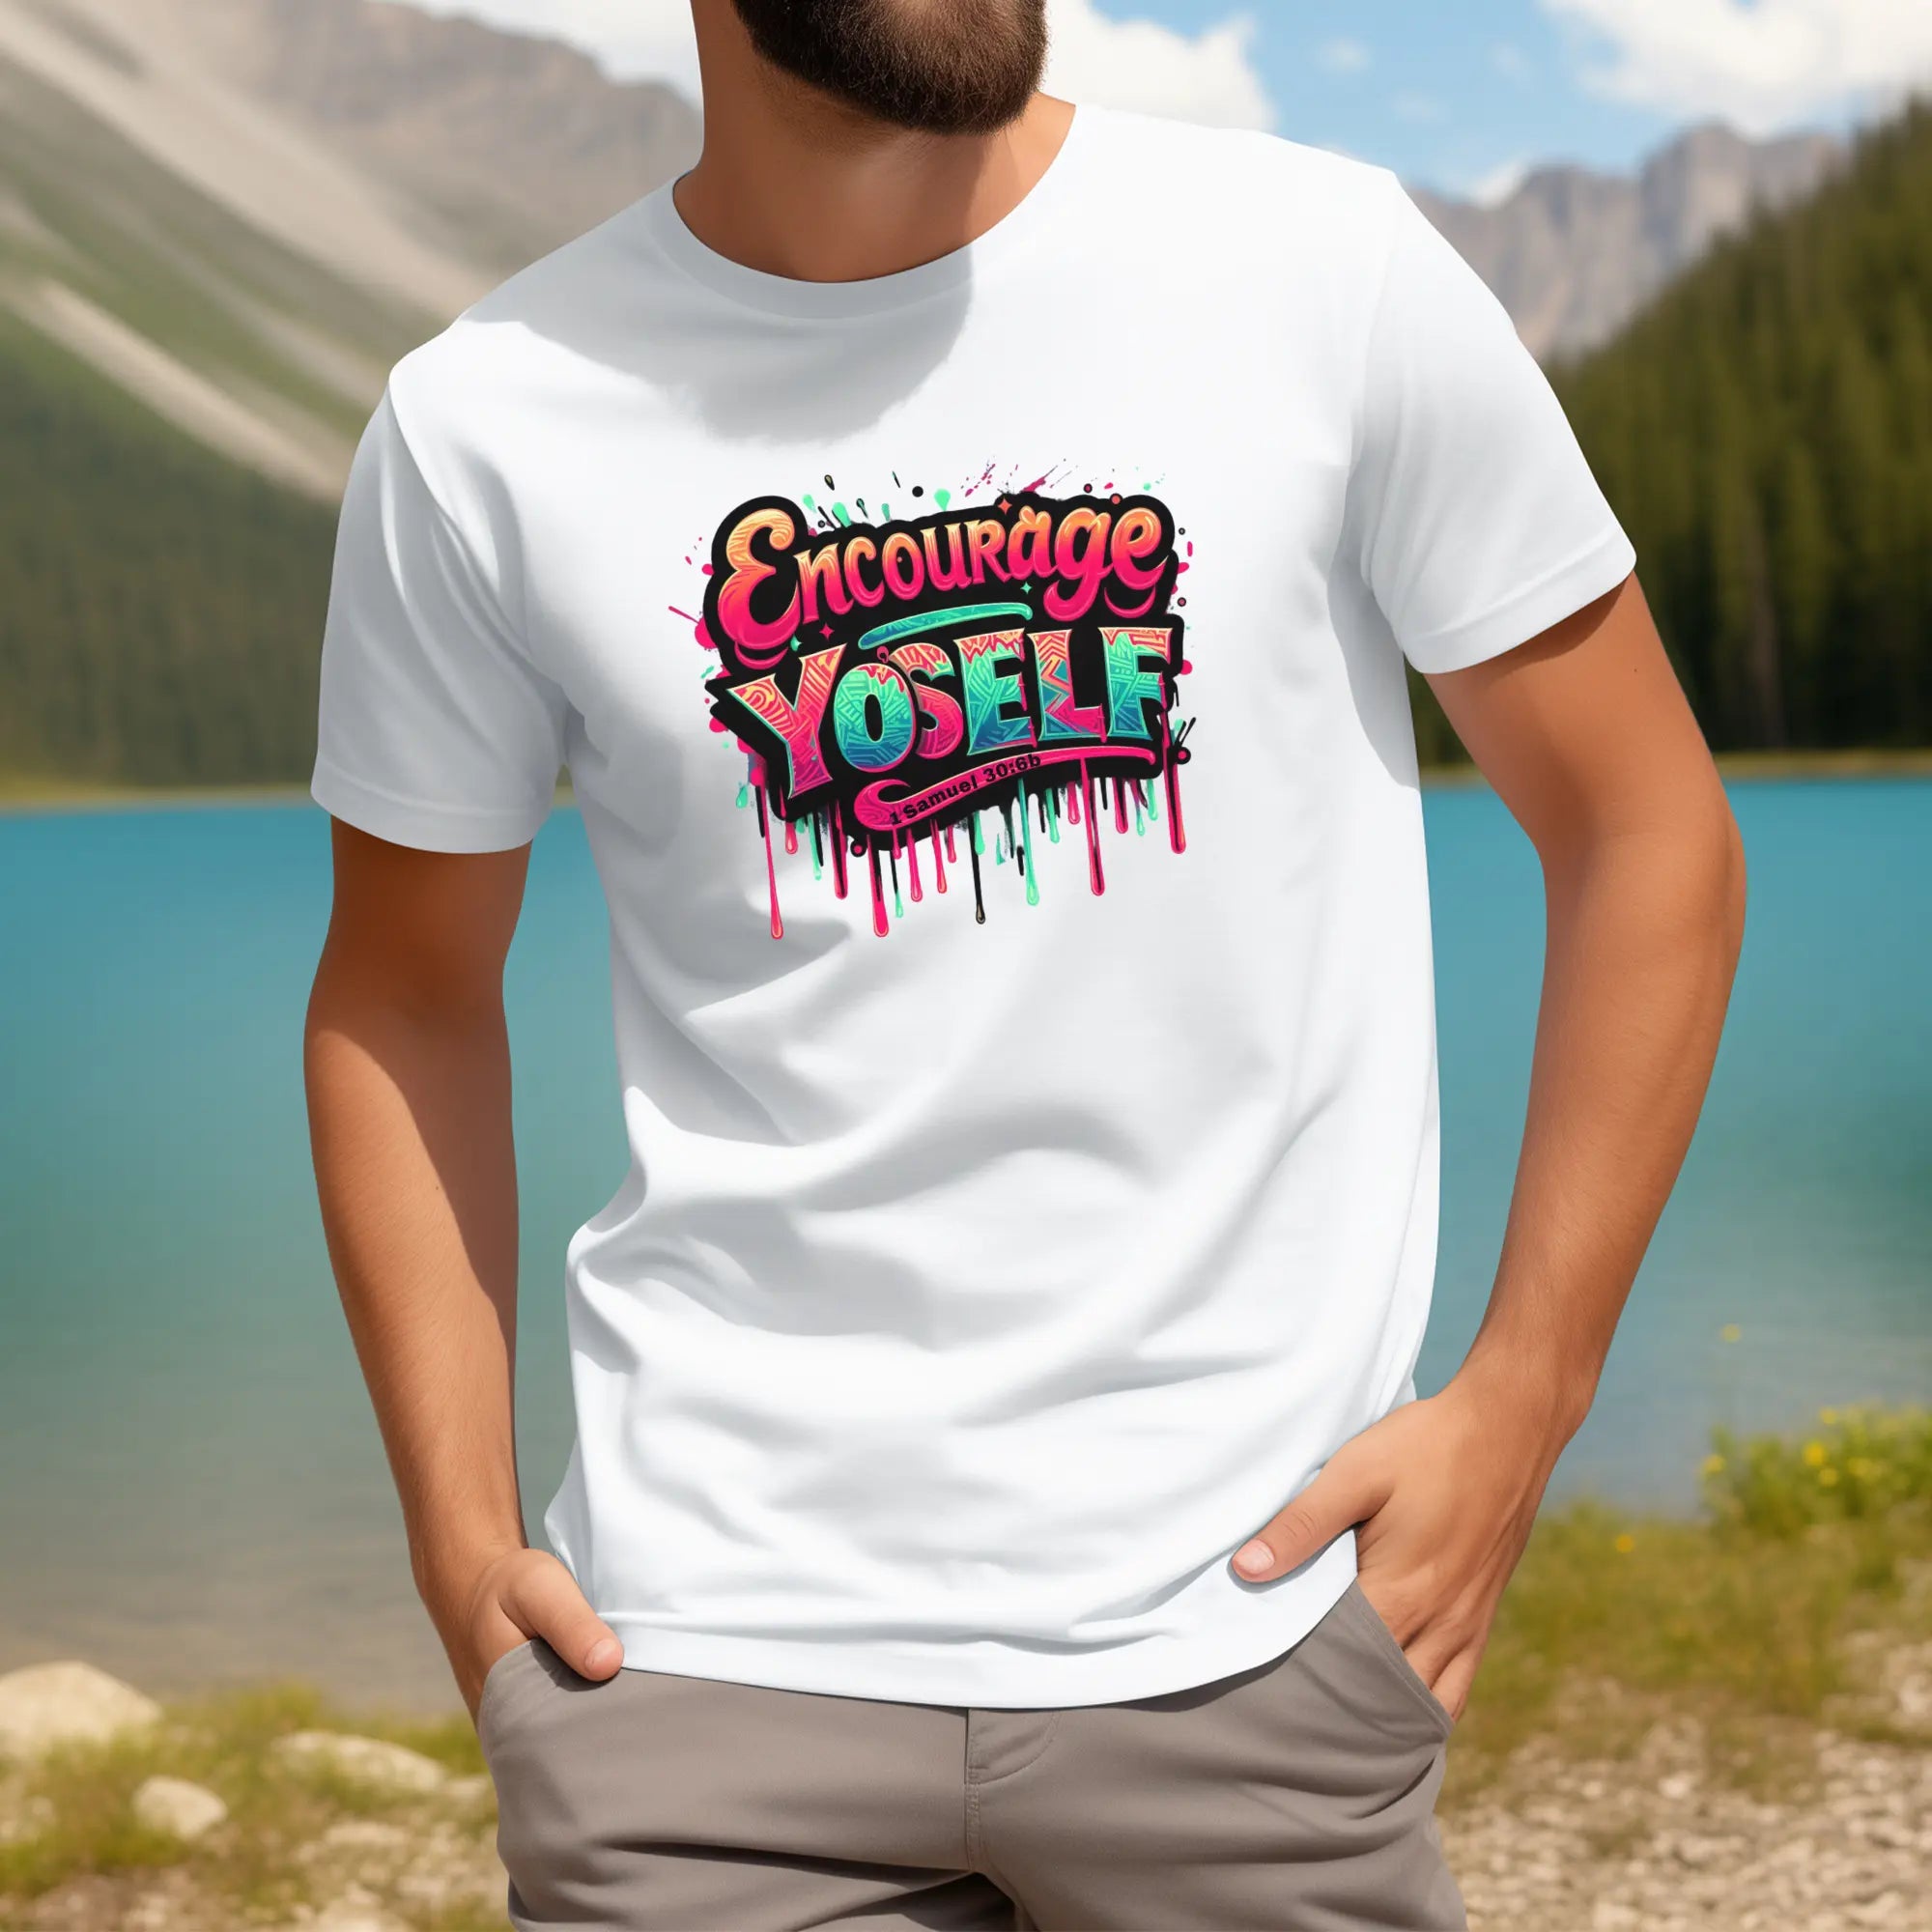 Encourage Yo'self Men's T-Shirt